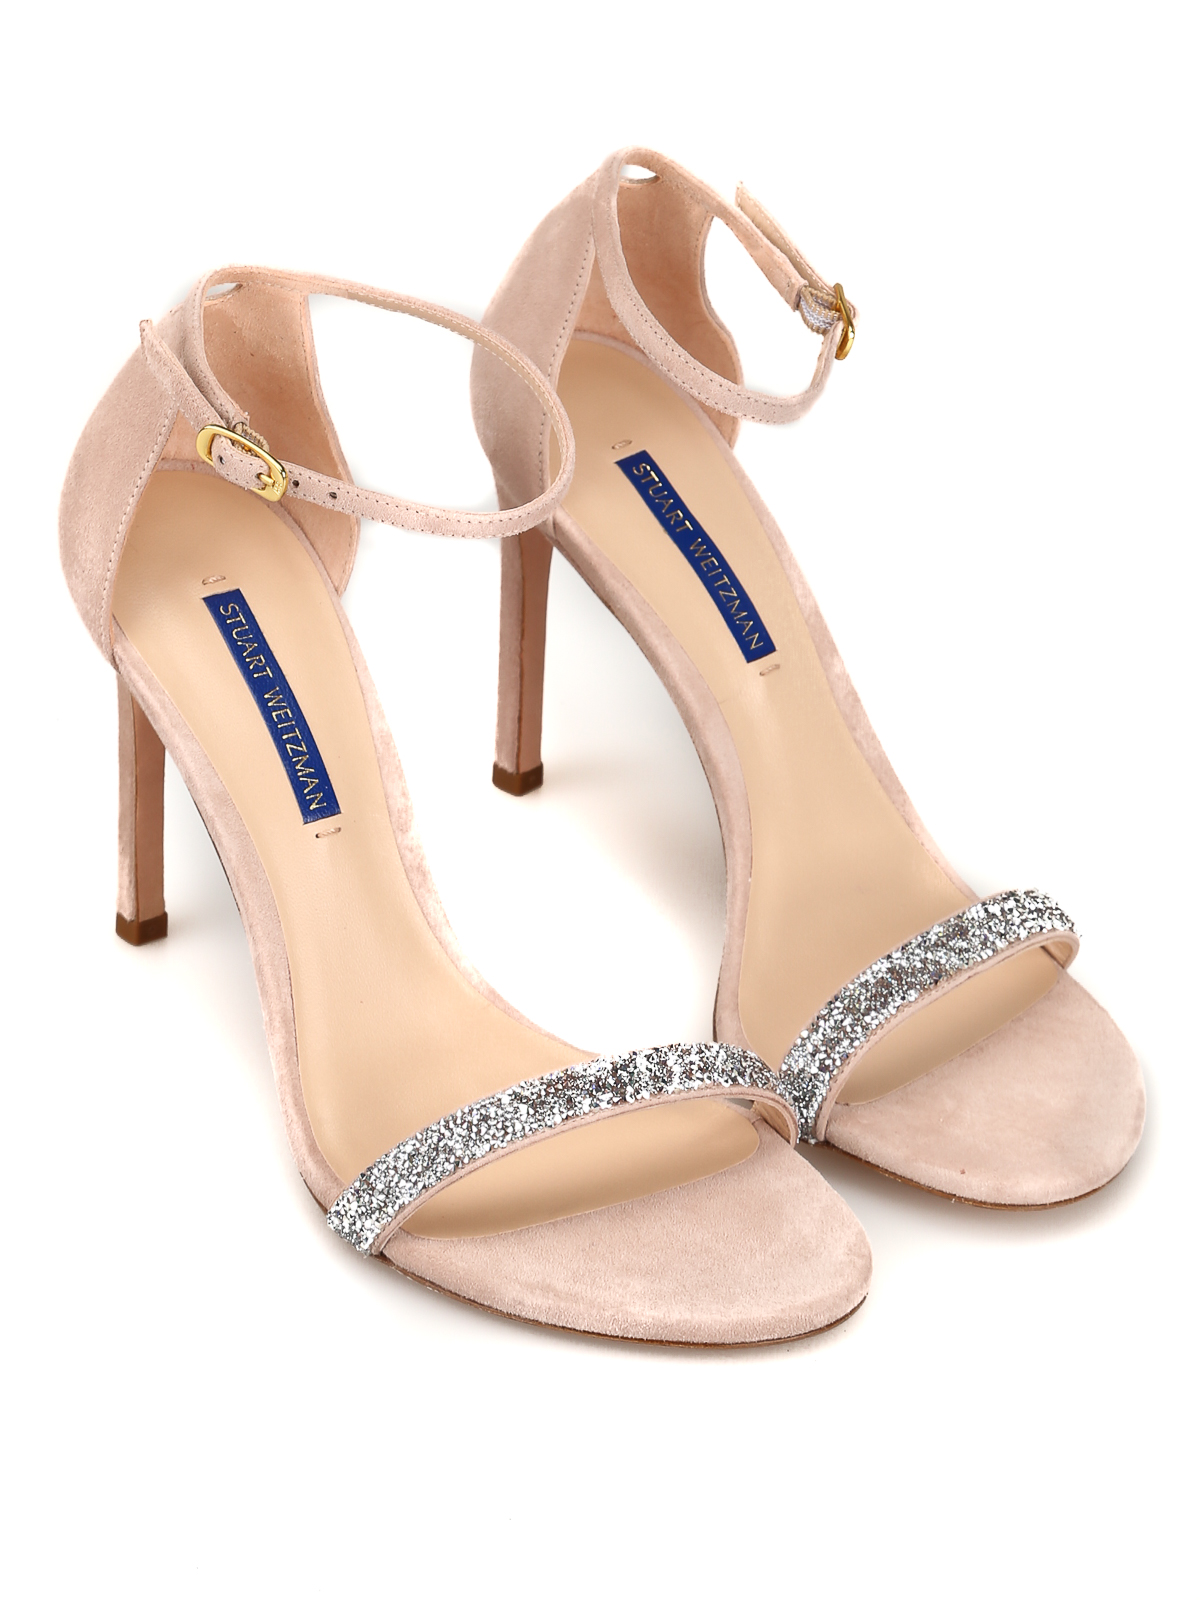 pink suede sandals heels